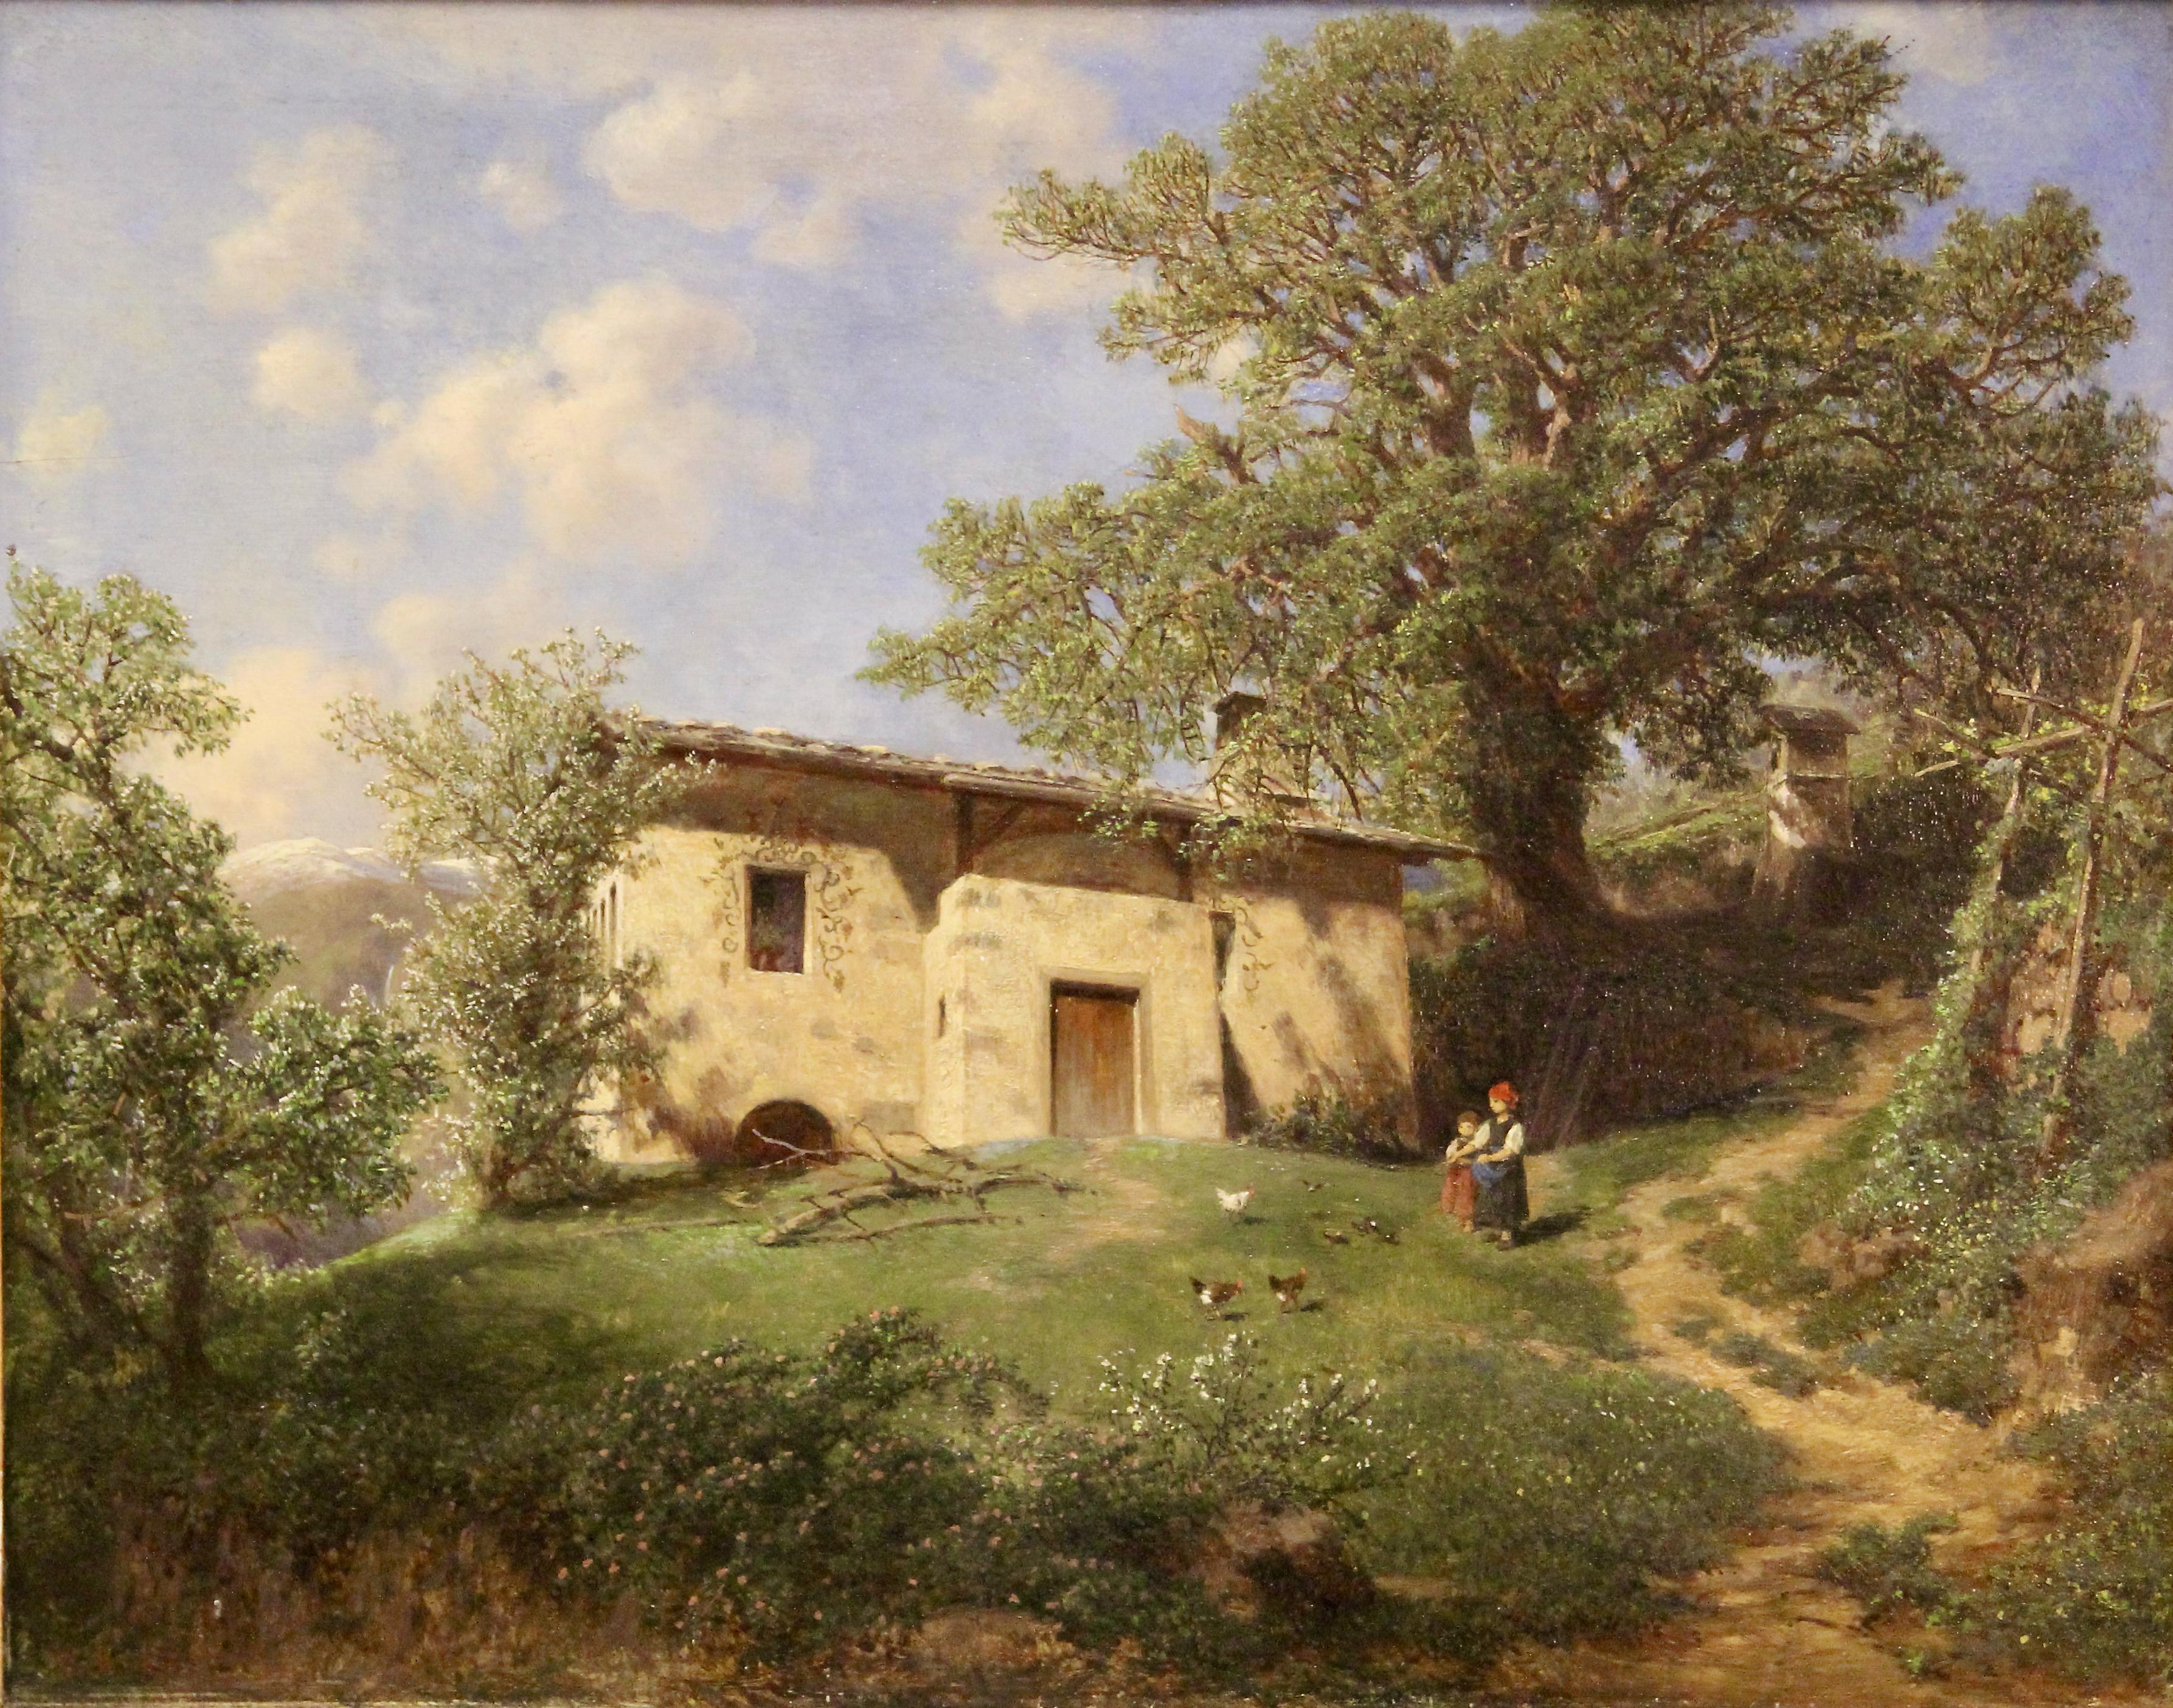 Gottfried Seelos, Antique Oil painting "Home of Walther von der Vogelweide"